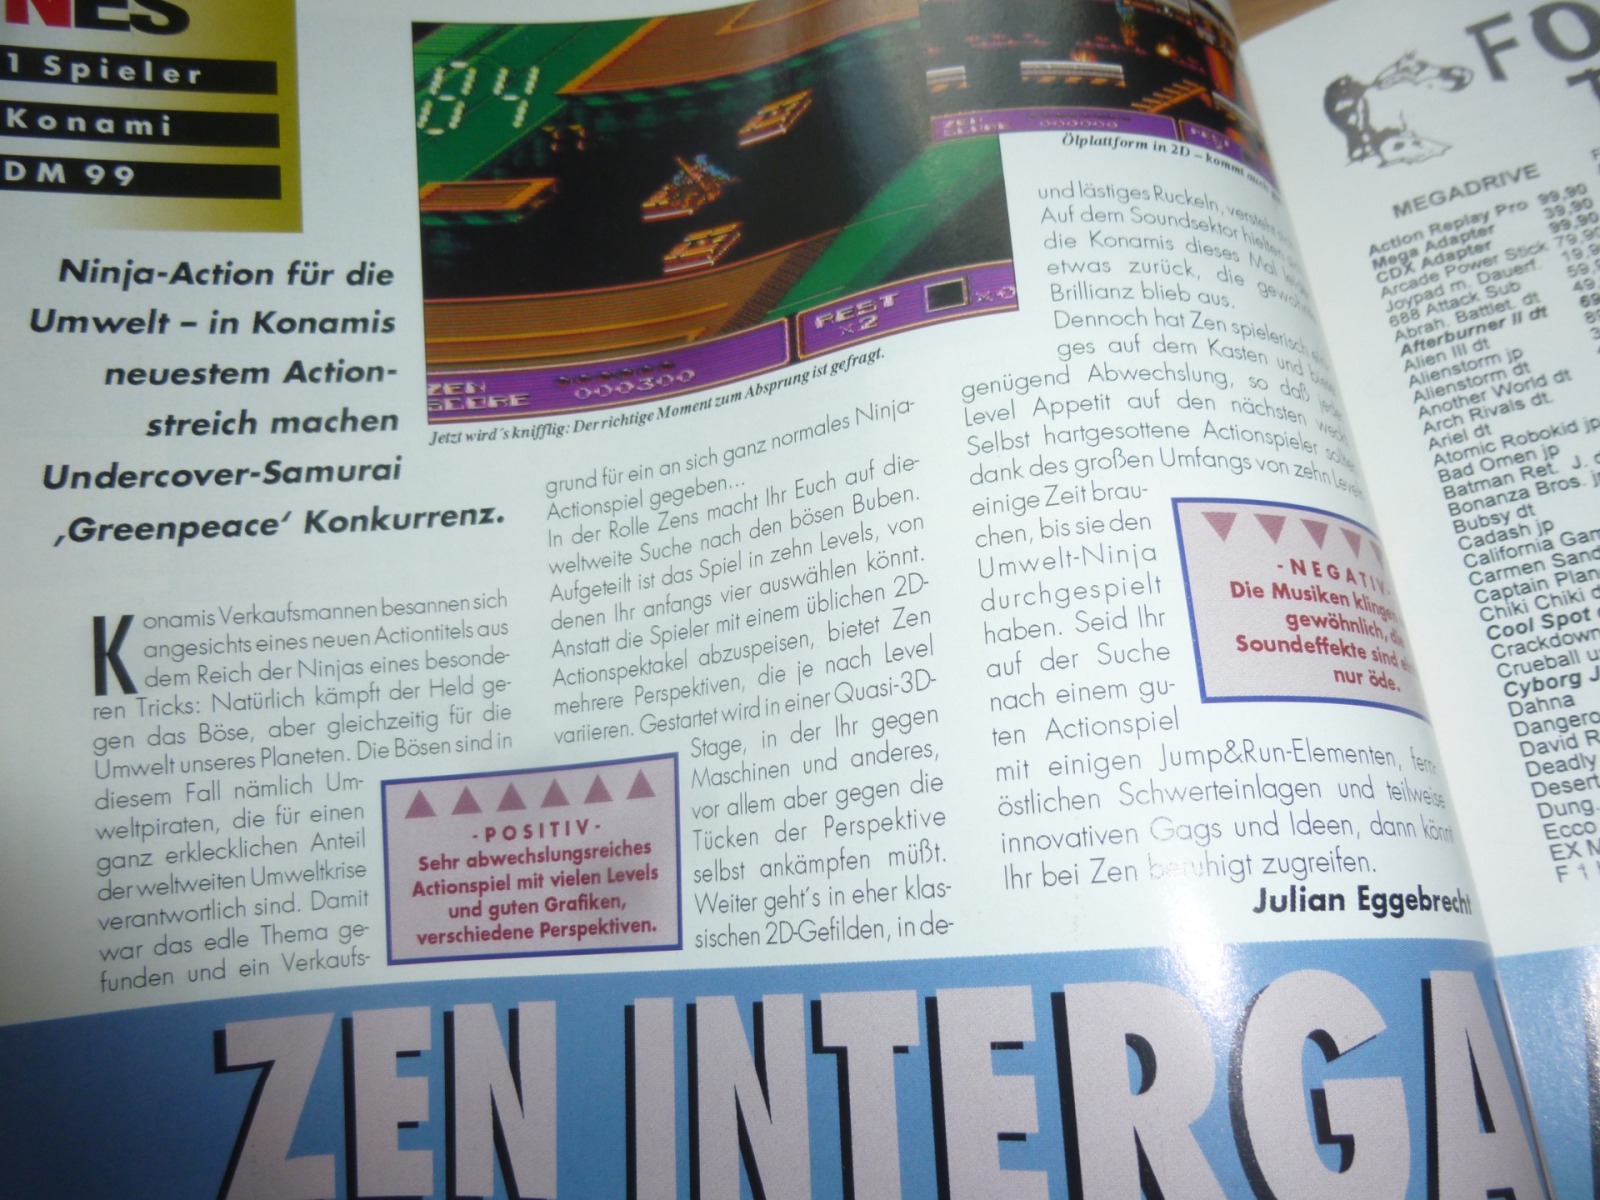 TOTAL Das unabhängige Magazin - 100 Nintendo - Ausgabe 9/93 1993 13